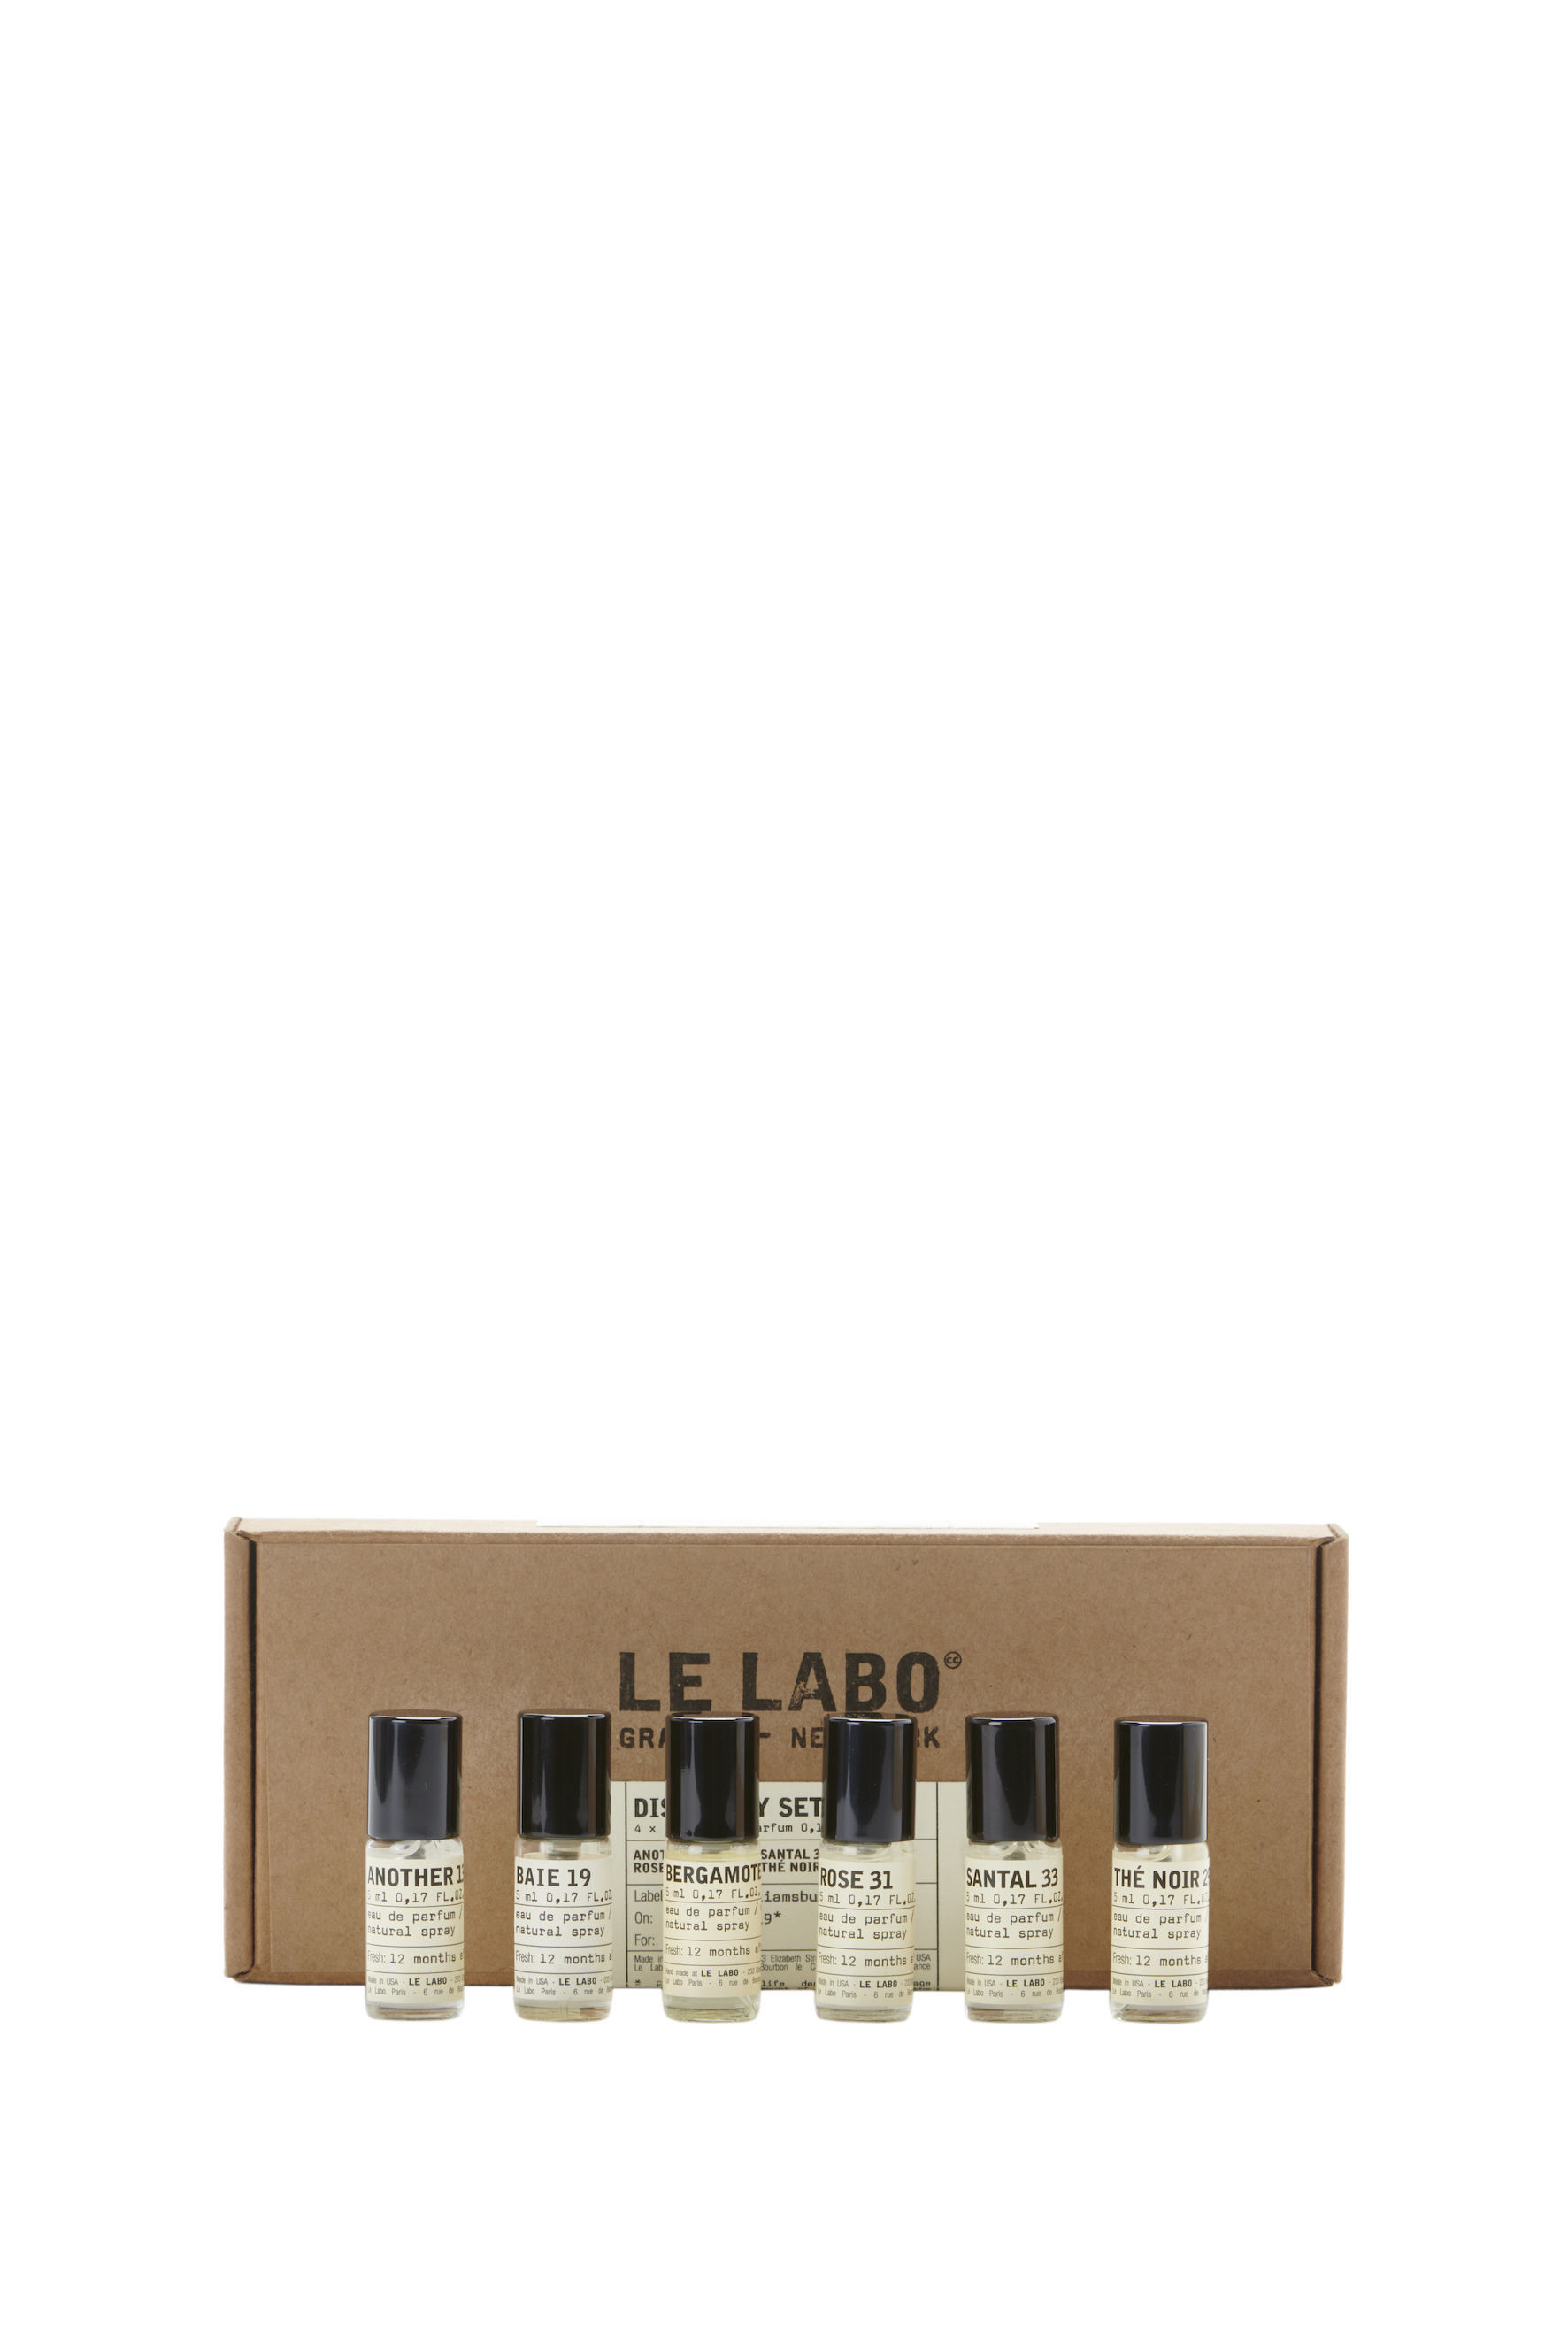 LE LABO、6種のアイコニックな香り ディスカバリーセット発売